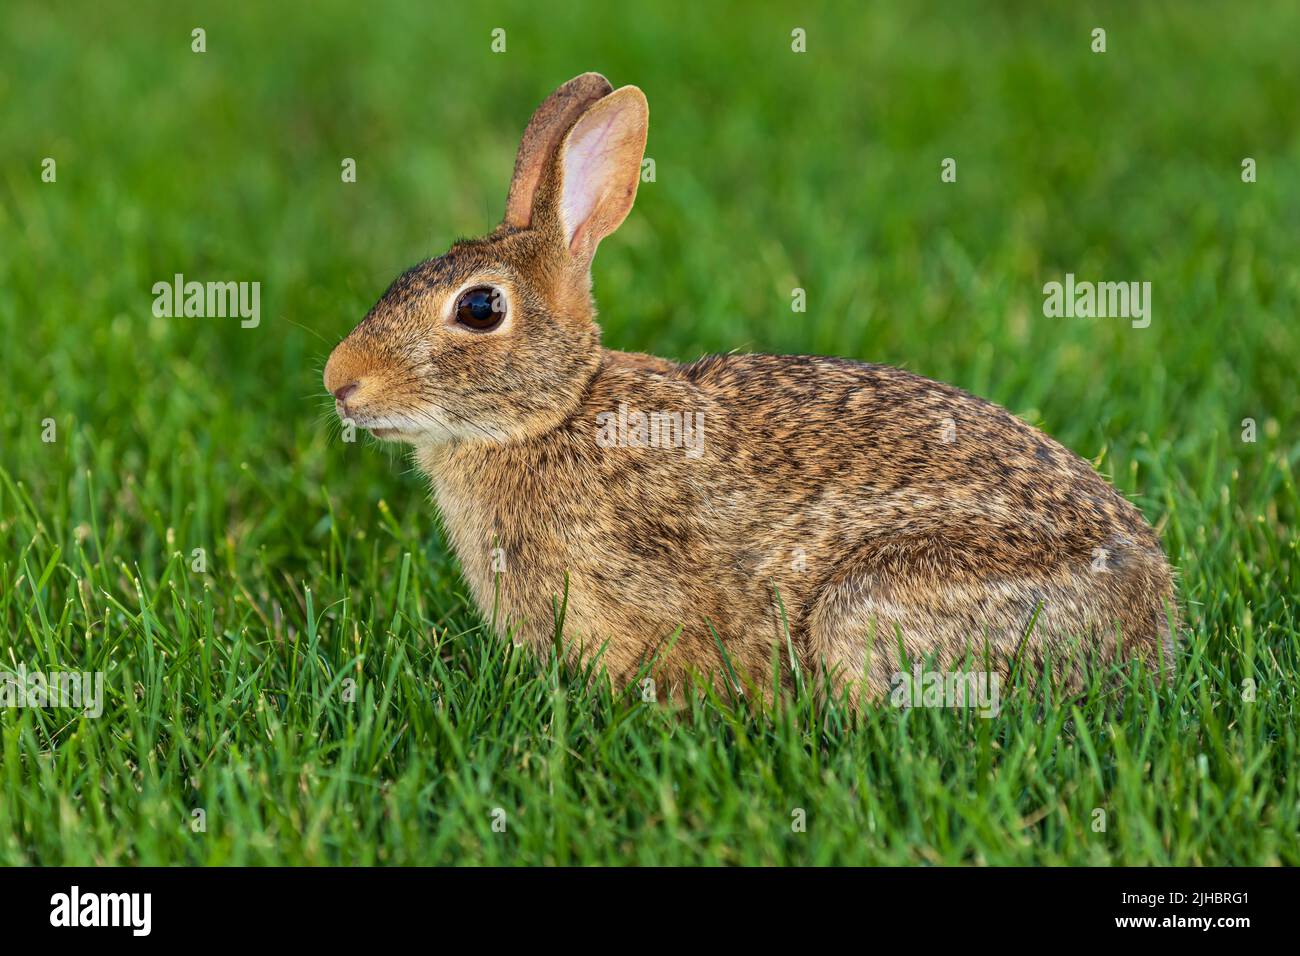 Wilder Hase aus Baumwollschwanz im Rasen. Konzept zum Schutz von Wildtieren, Tieren und Lebensräumen. Stockfoto